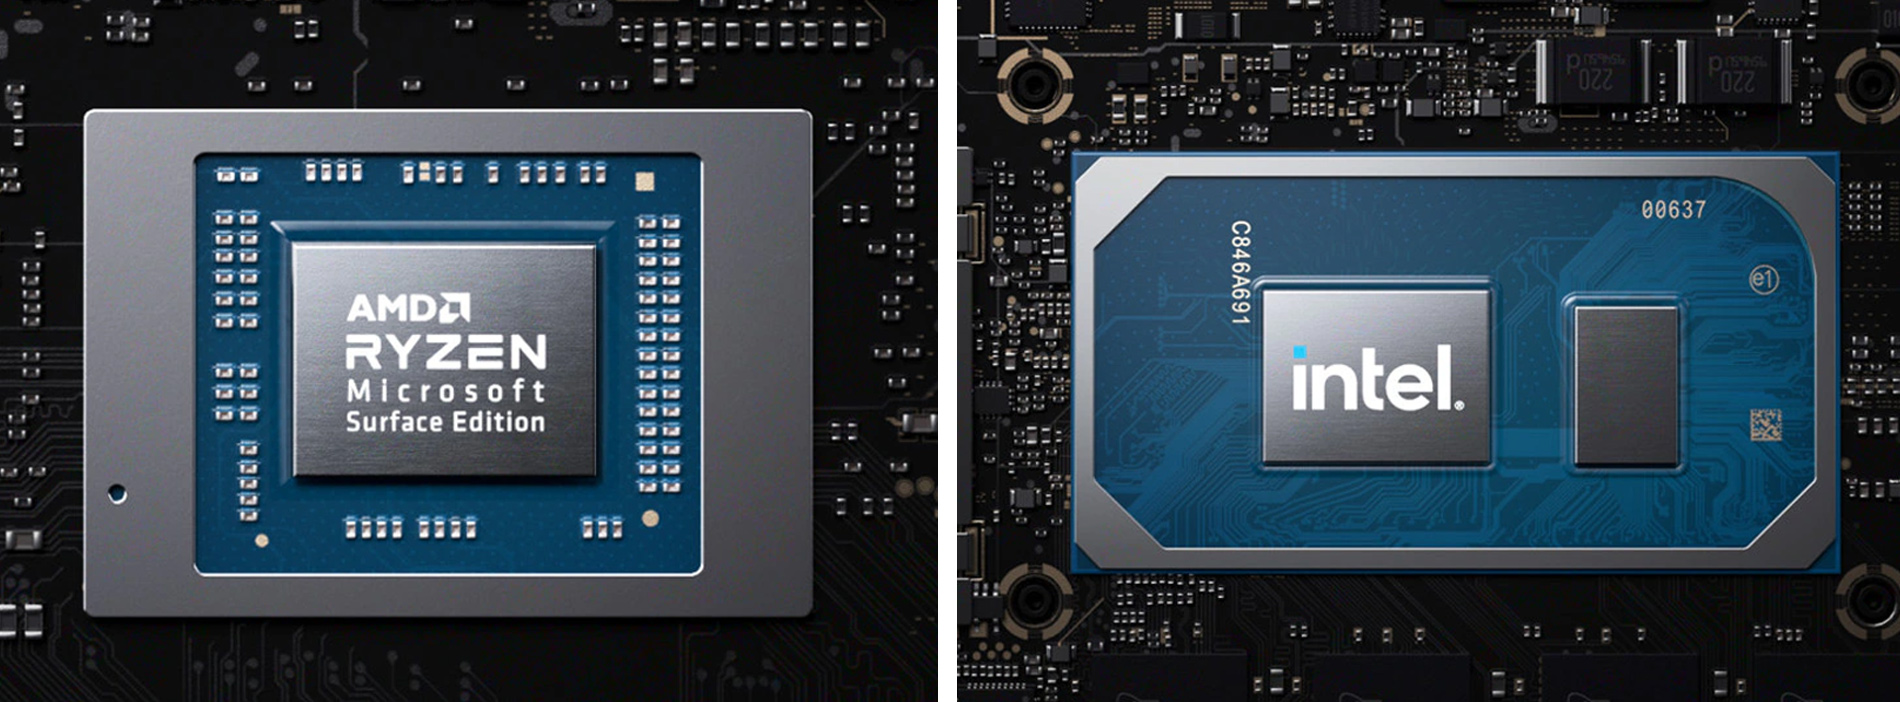 Процесори AMD Ryzen та Intel Core останнього покоління